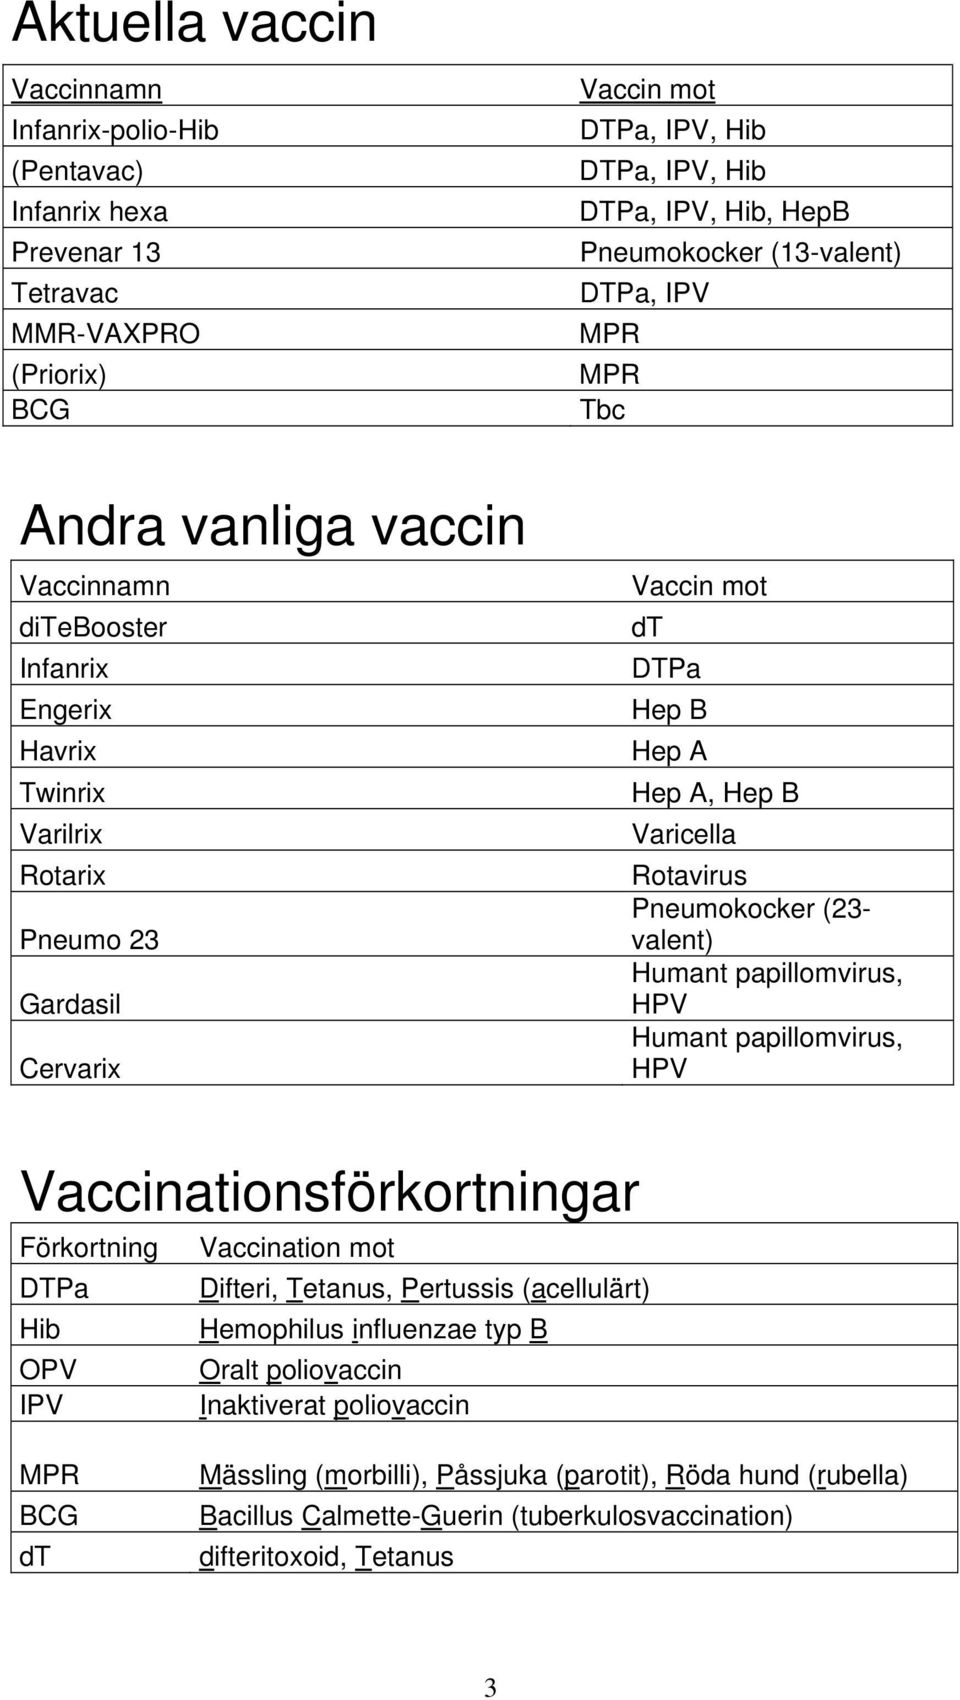 Varicella Rotavirus Pneumokocker (23- valent) Humant papillomvirus, HPV Humant papillomvirus, HPV Vaccinationsförkortningar Förkortning Vaccination mot DTPa Difteri, Tetanus, Pertussis (acellulärt)